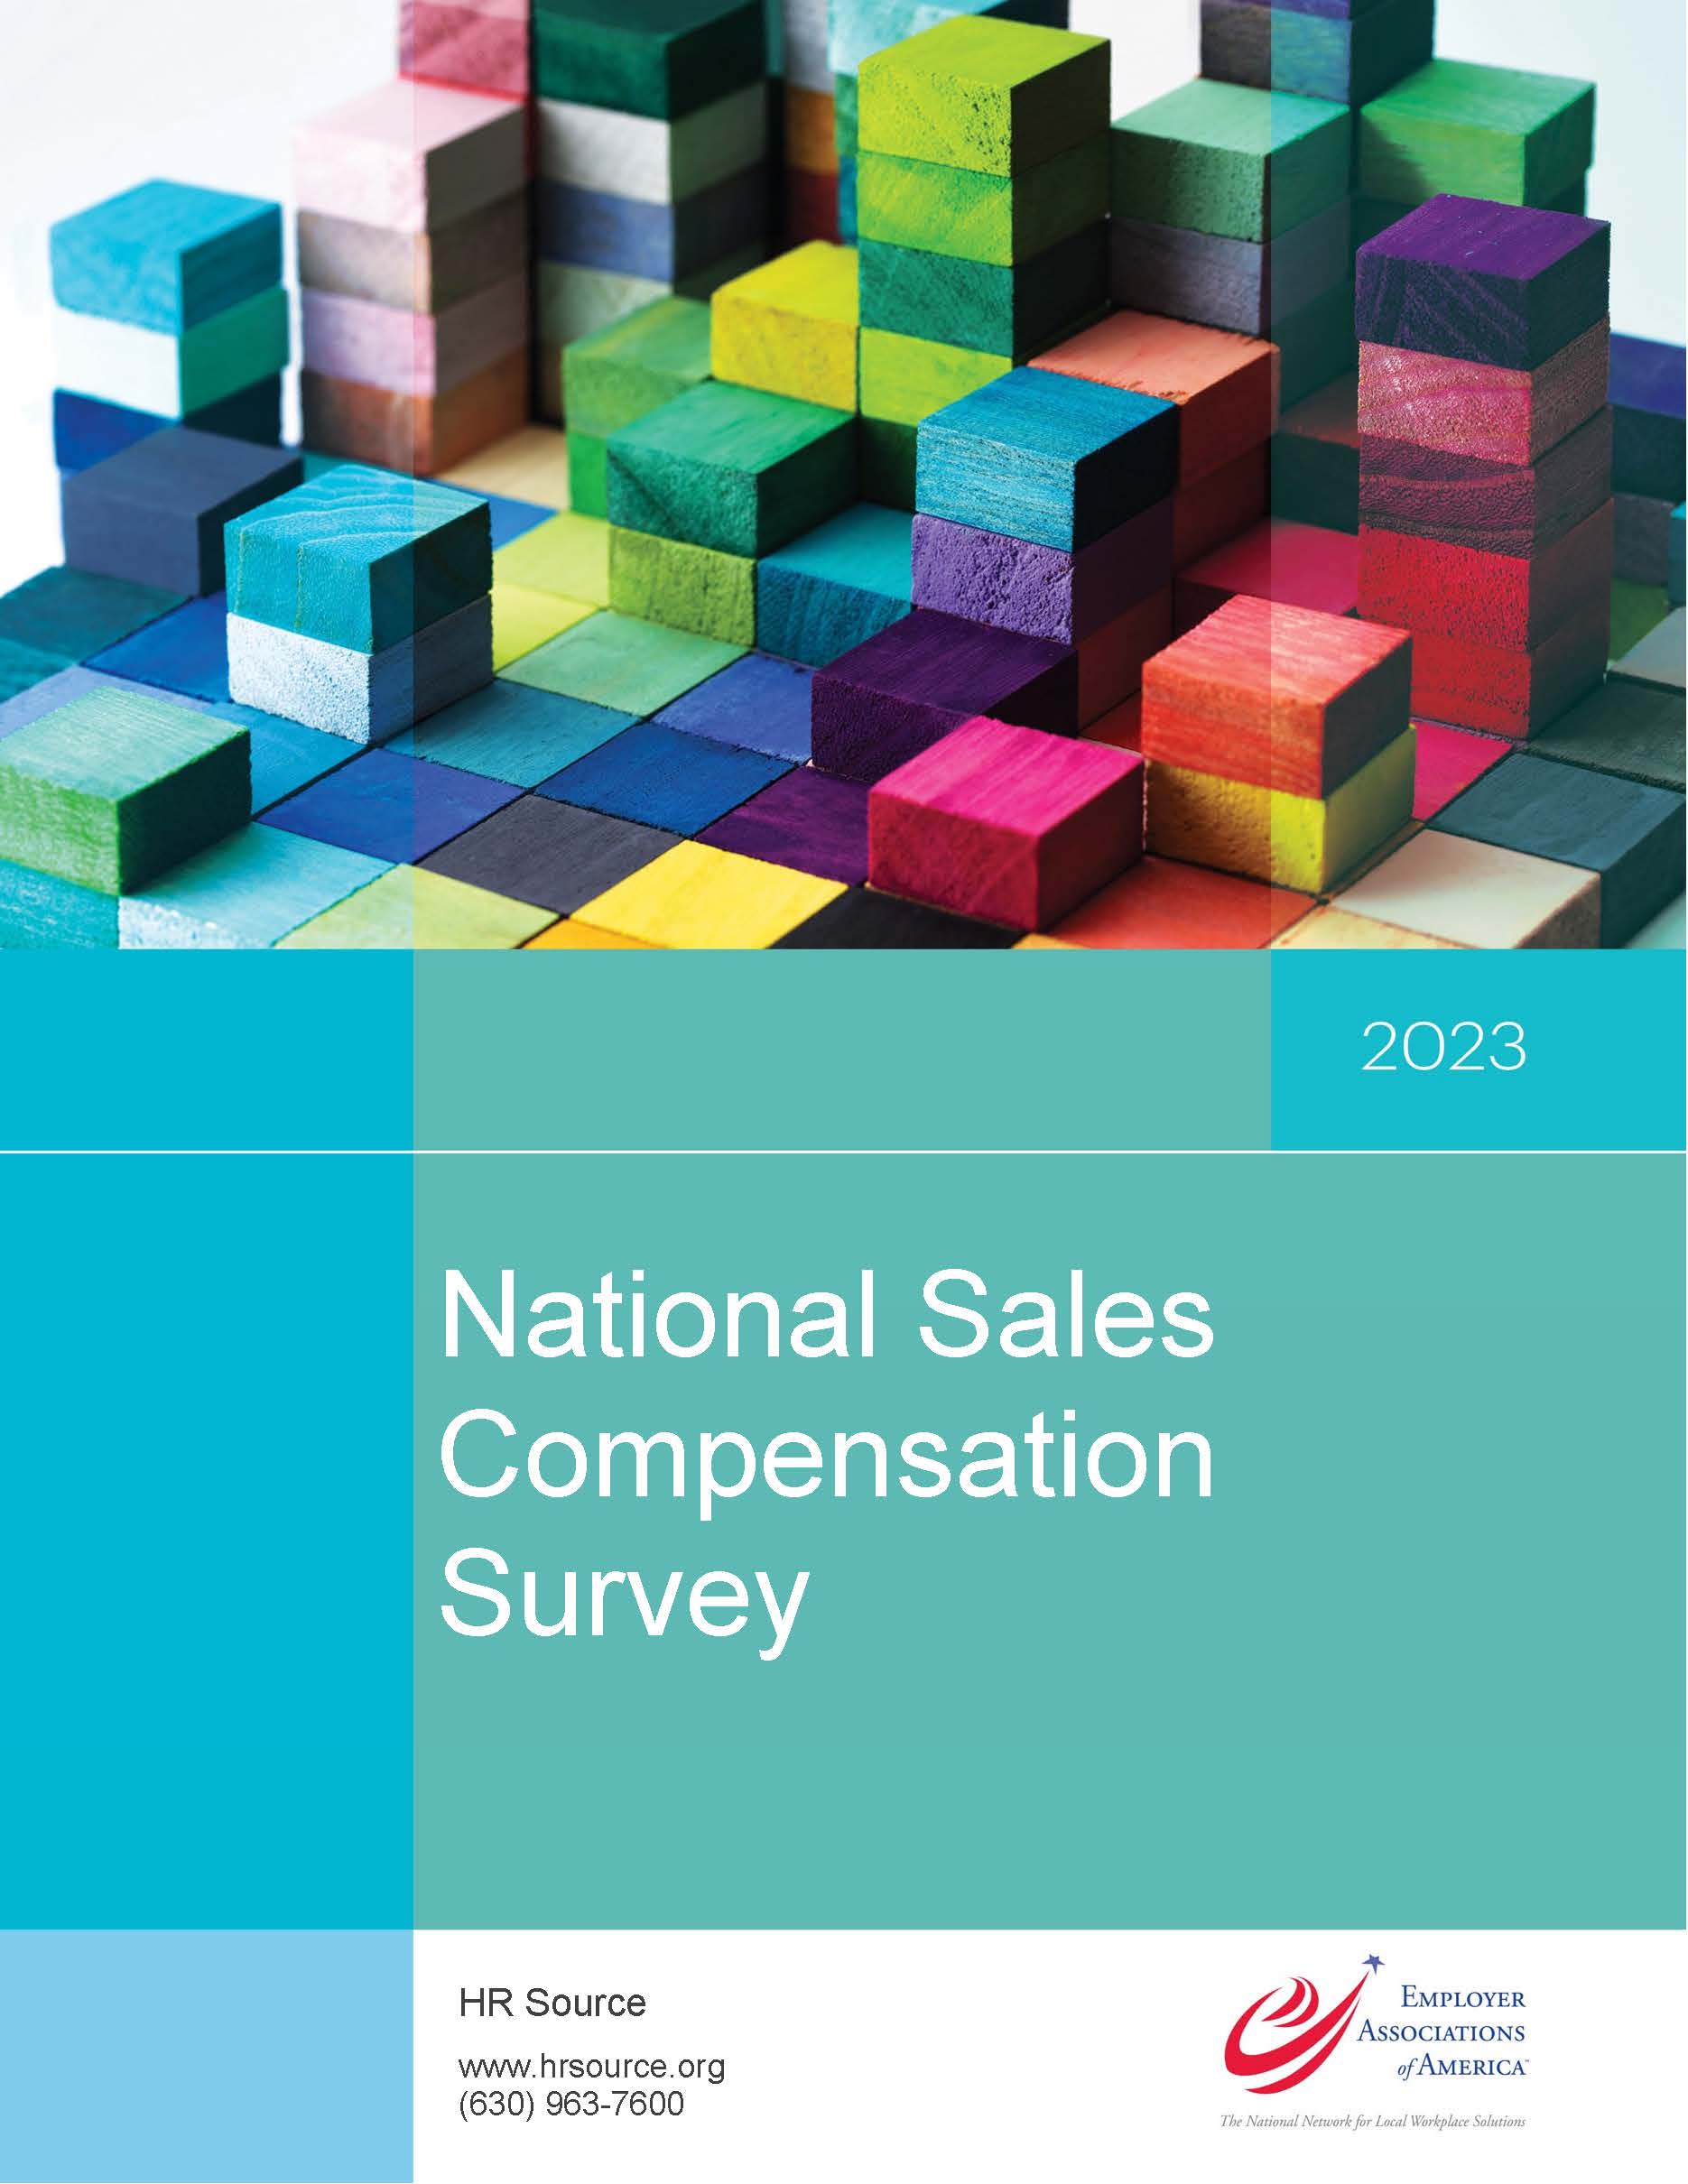 National Sales Compensation Survey 2023